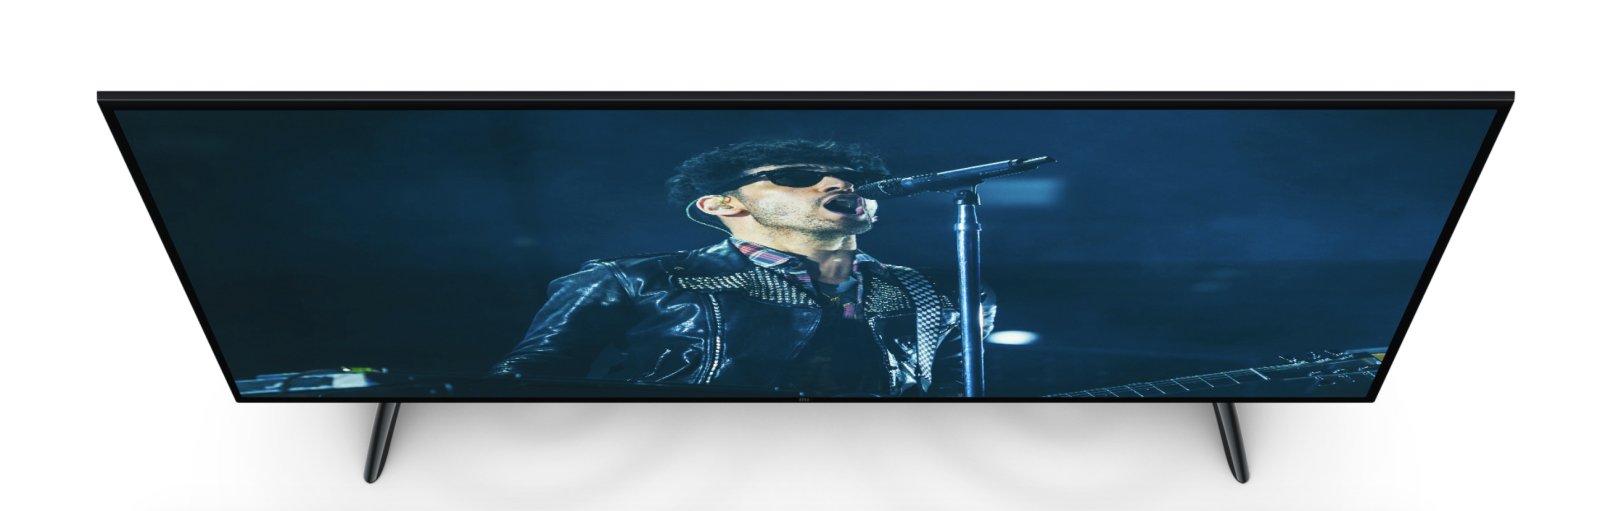 Âm thanh Dolby trên Tivi Xiaomi 4S 43 inch